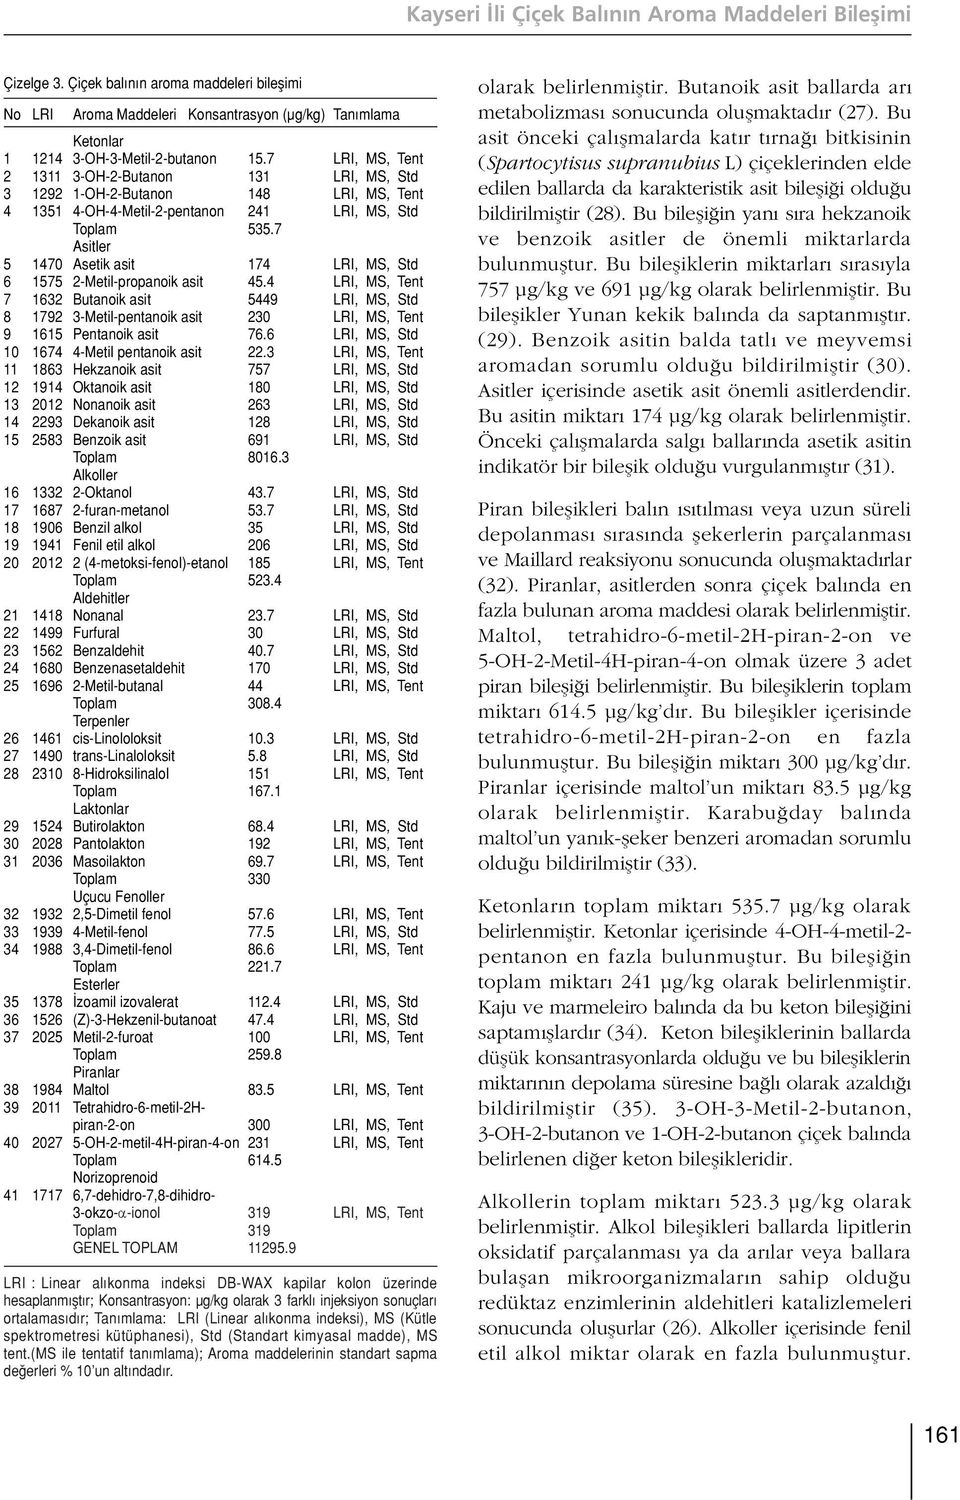 7 Asitler 5 1470 Asetik asit 174 LRI, MS, Std 6 1575 2-Metil-propanoik asit 45.